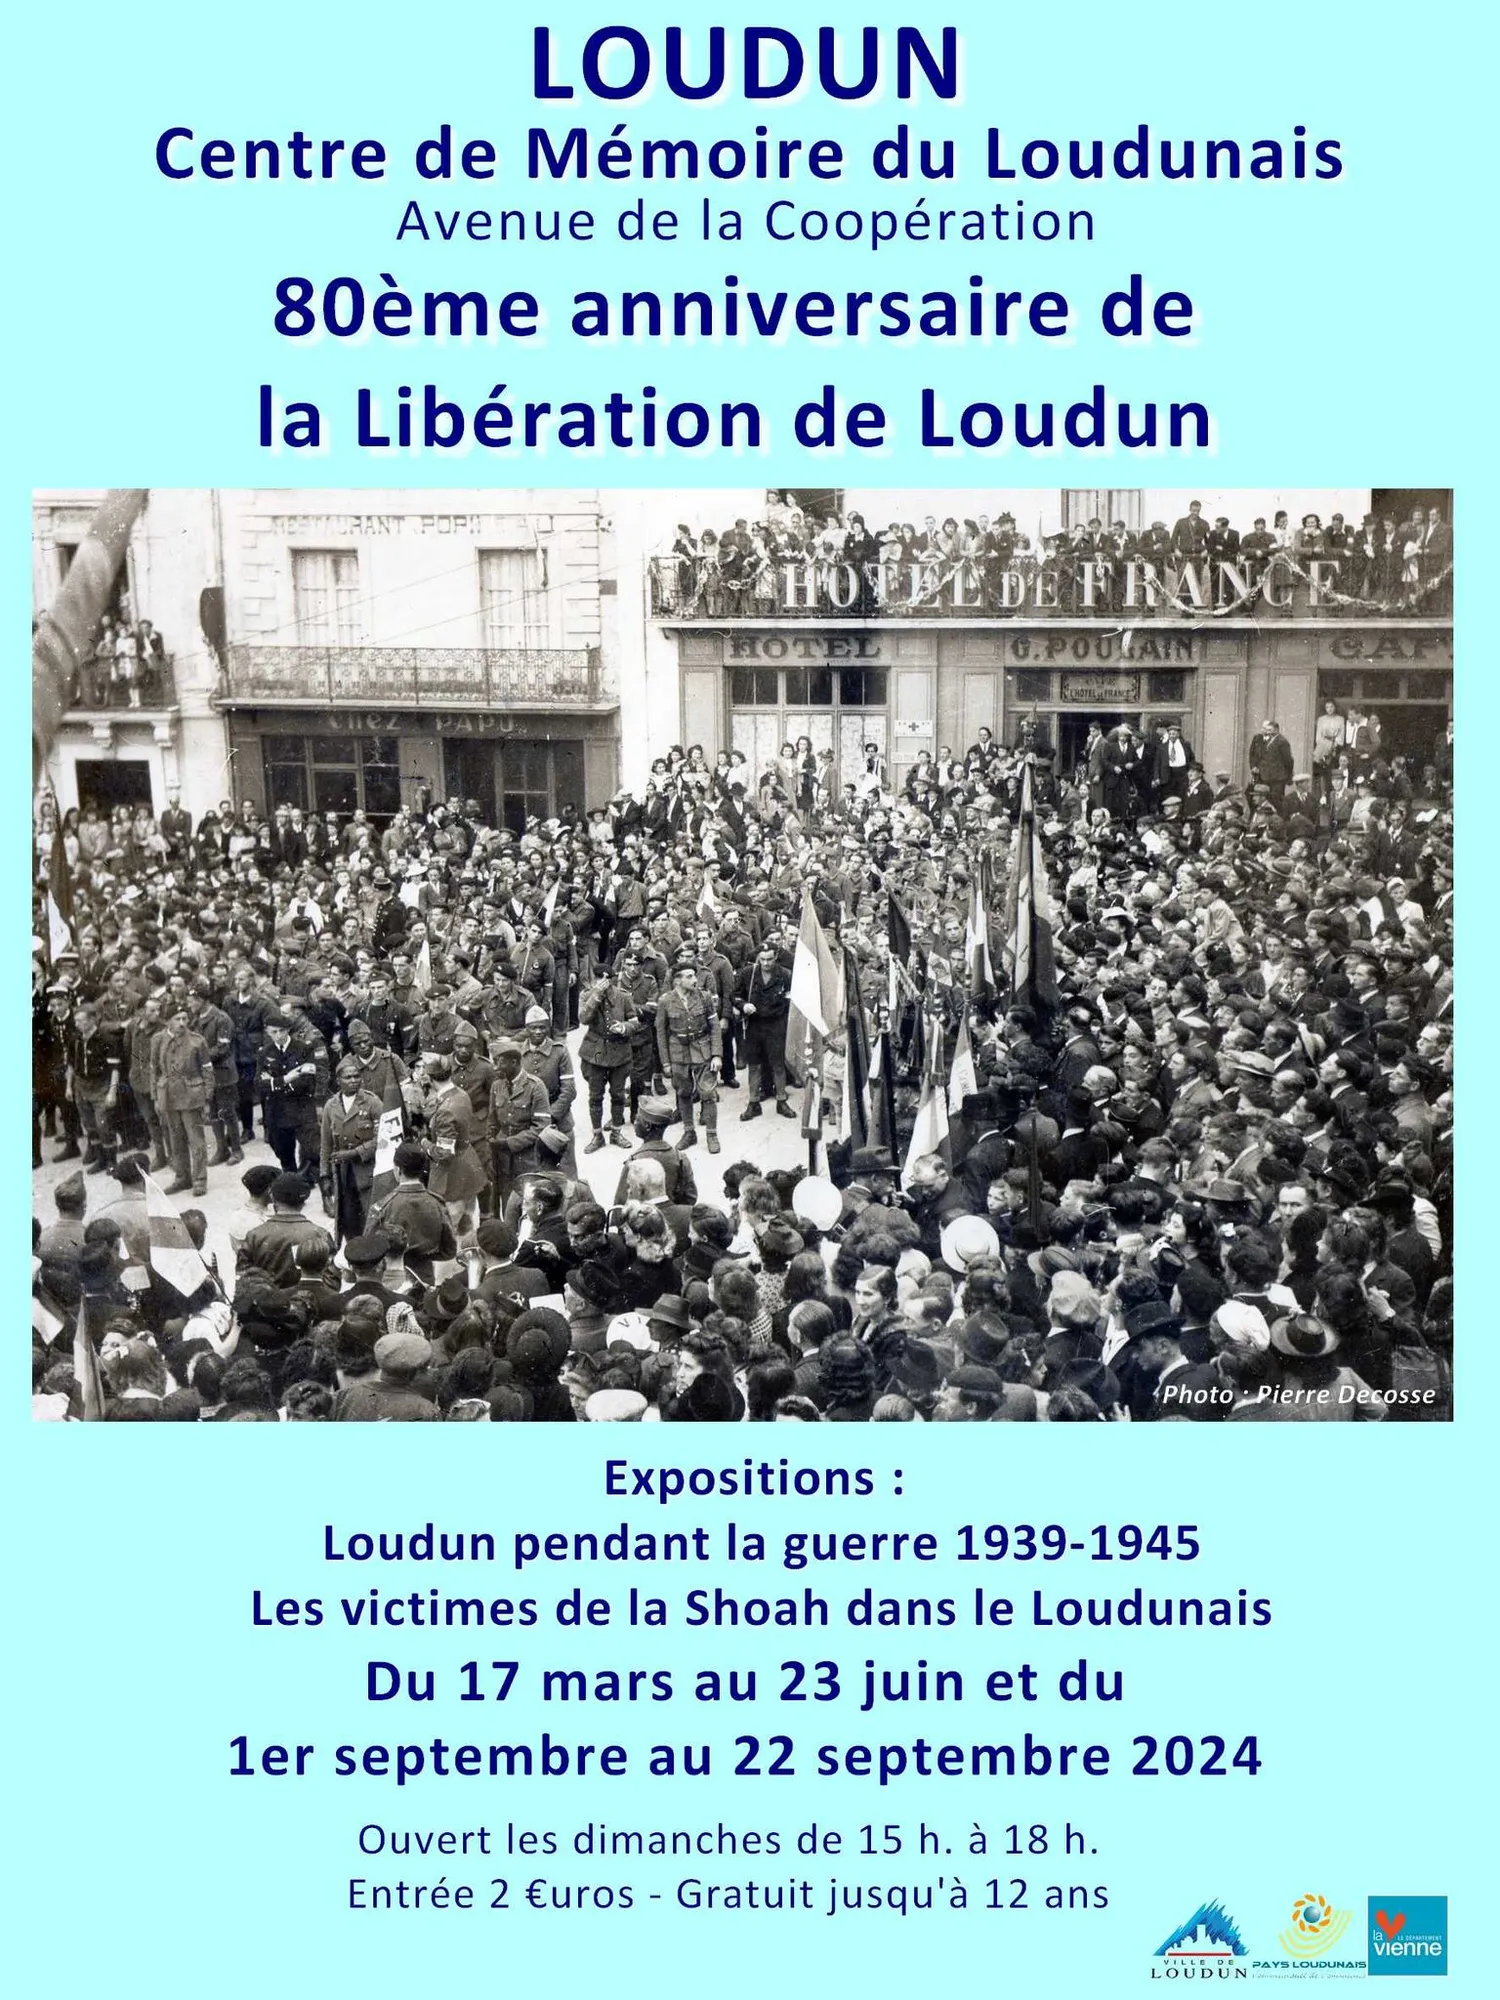 Image qui illustre: Exposition "80ème anniversaire de la Libération de Loudun" à Loudun - 0